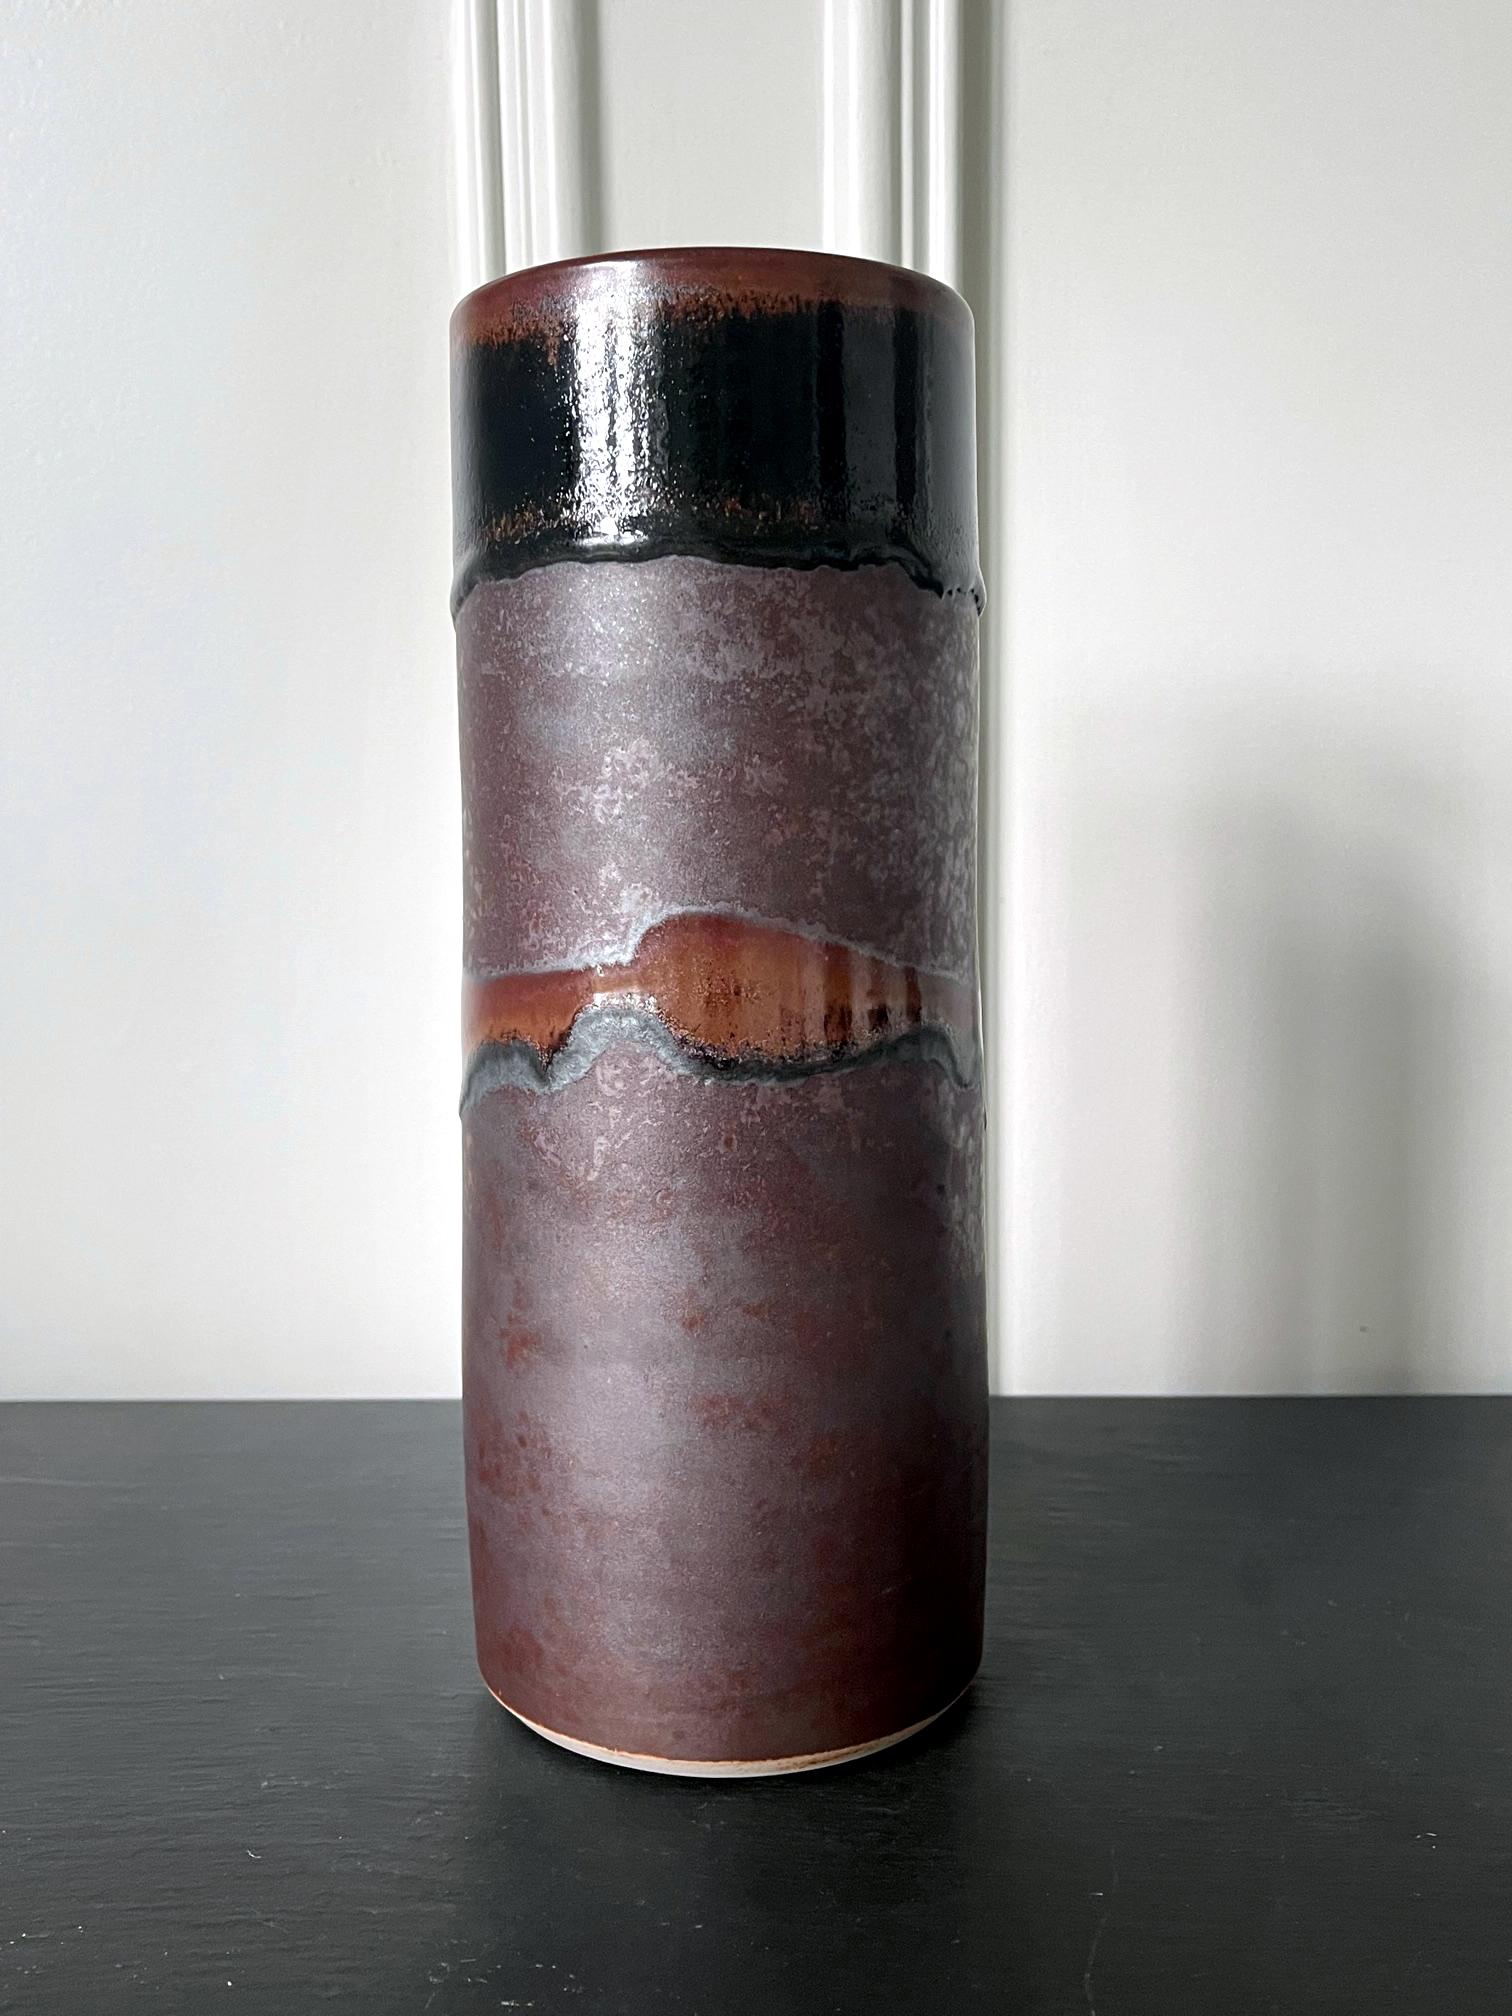 Vase en céramique de forme cylindrique légèrement effilée, réalisé par le potier Frère Thomas Bezanson (1929-2007). La silouette minimaliste est étonnamment primordiale avec son bord de bouche plus large dans le cercle parfait, rappelant la forme de